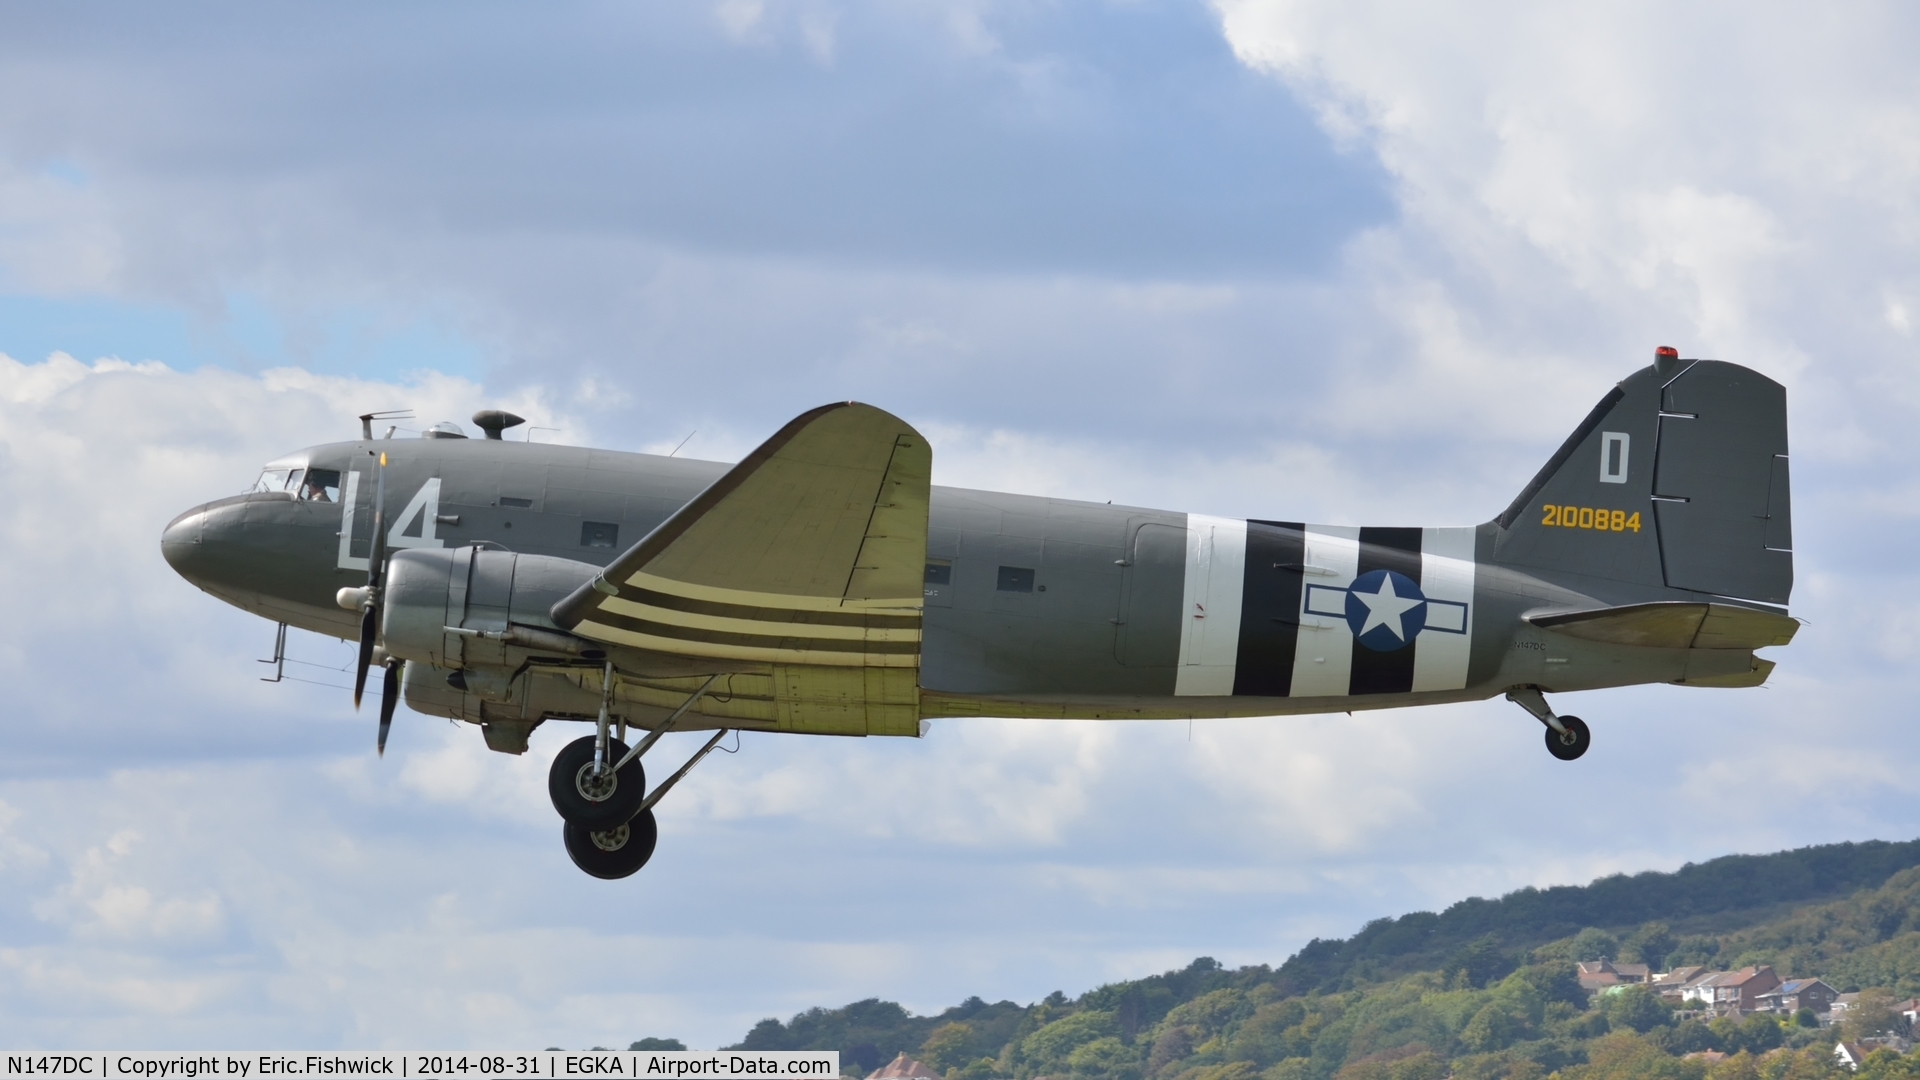 N147DC, 1943 Douglas C-47A-75-DL Skytrain C/N 19347, 41. 2100884 in display mode at the superb 25th Anniversary RAFA Shoreham Airshow.